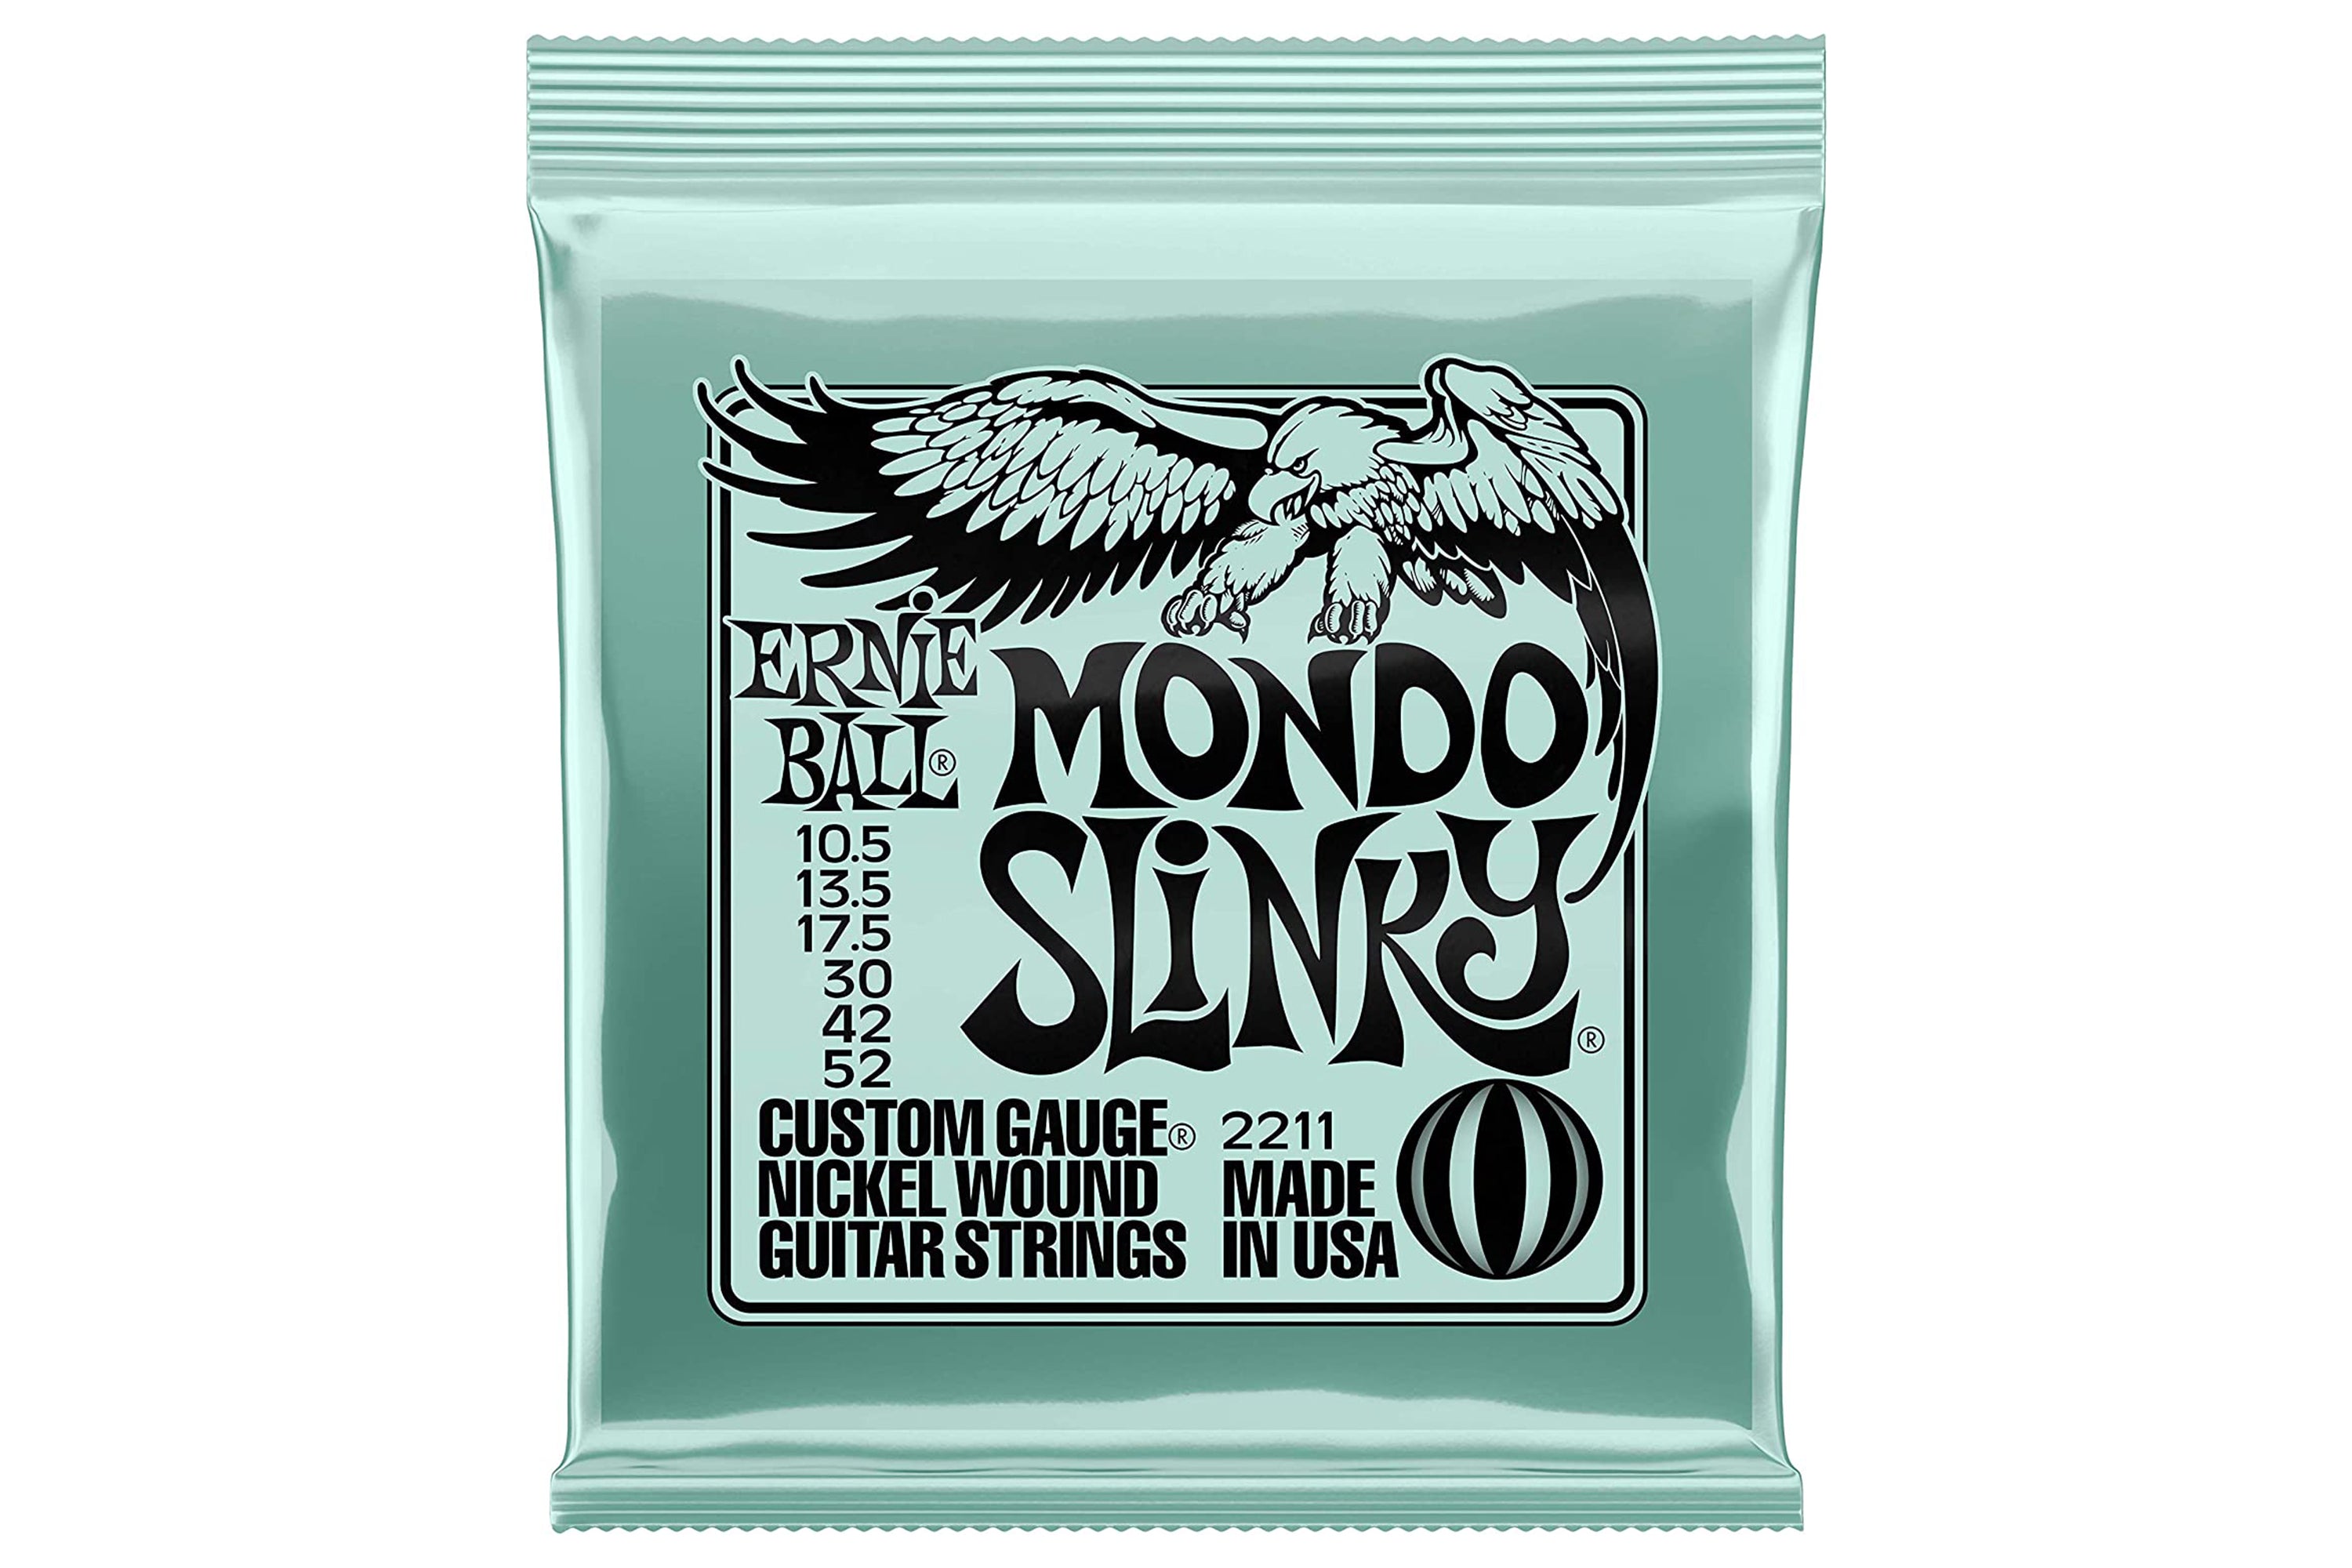 Ernie Ball Mondo Slinky Strings